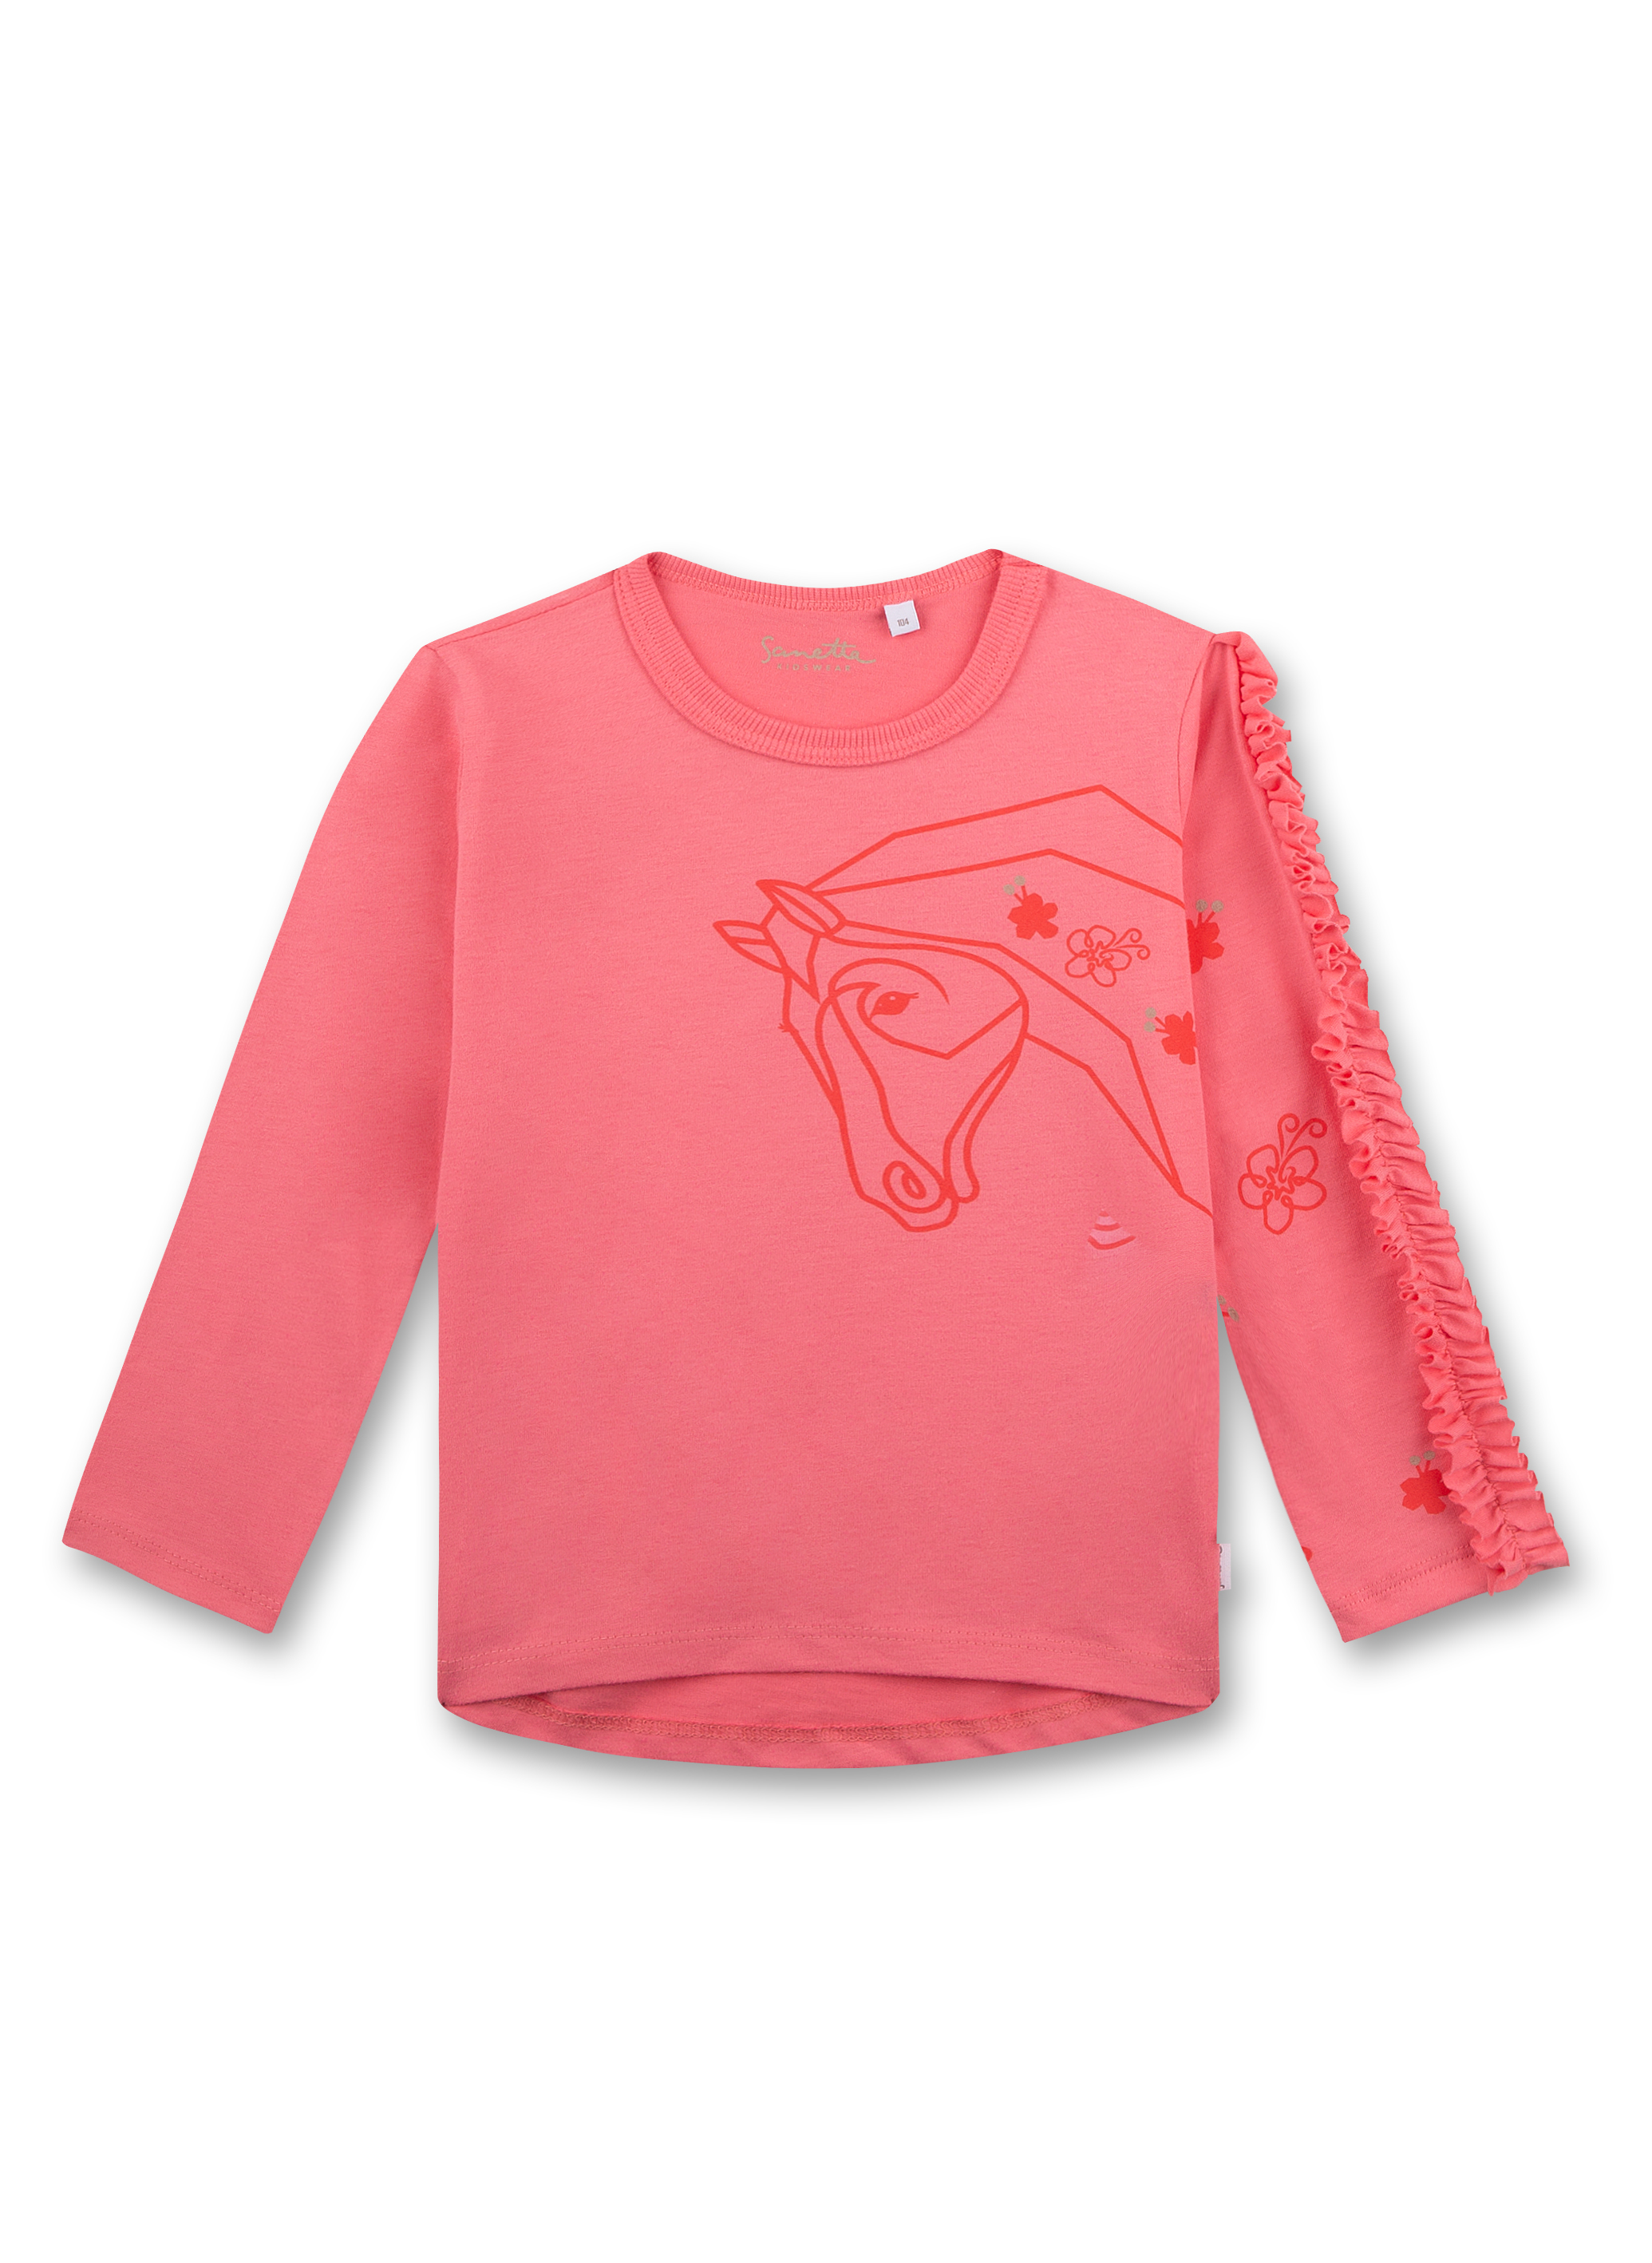 Mädchen-Shirt langarm Pink